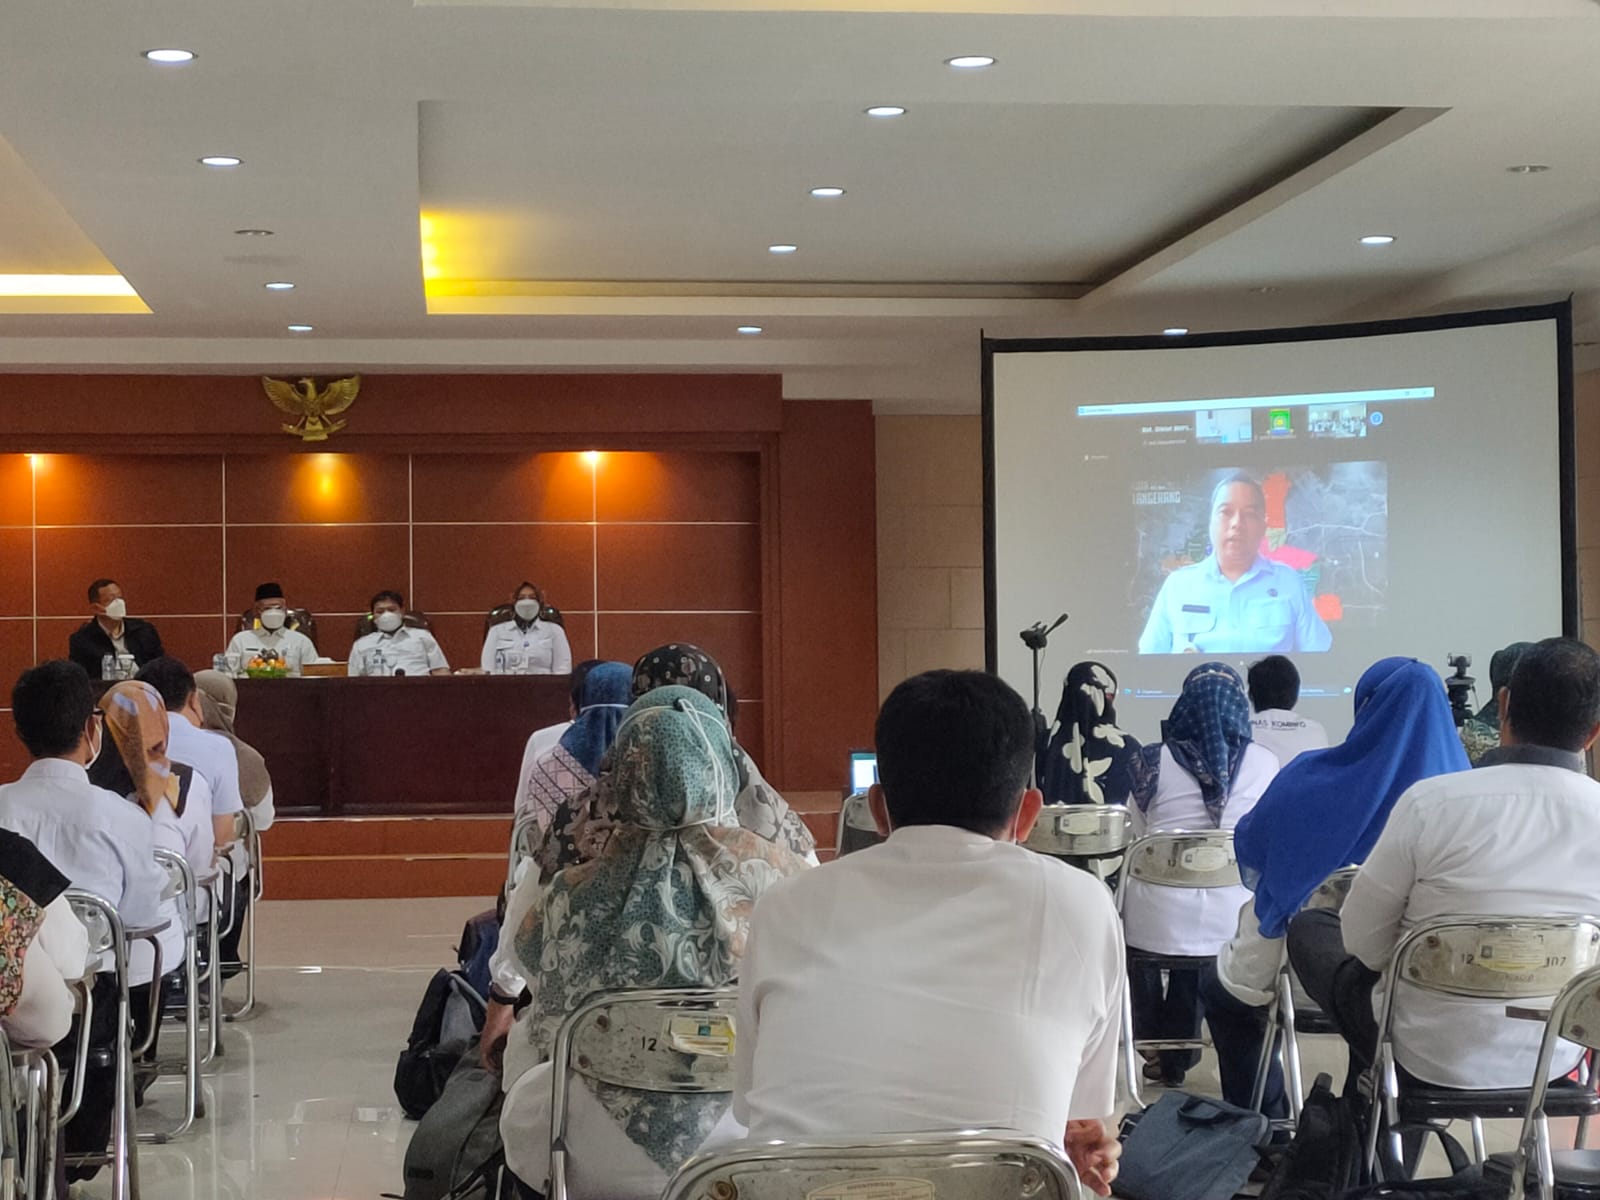 Pengimbasan Pelatihan Pemanfaatan dan Pembuatan Media Pembelajaran, Inovasi Belajar serta Pojok Belajar bagi Guru SD dan SMP di Lingkungan Pemerintah Kota Tangerang